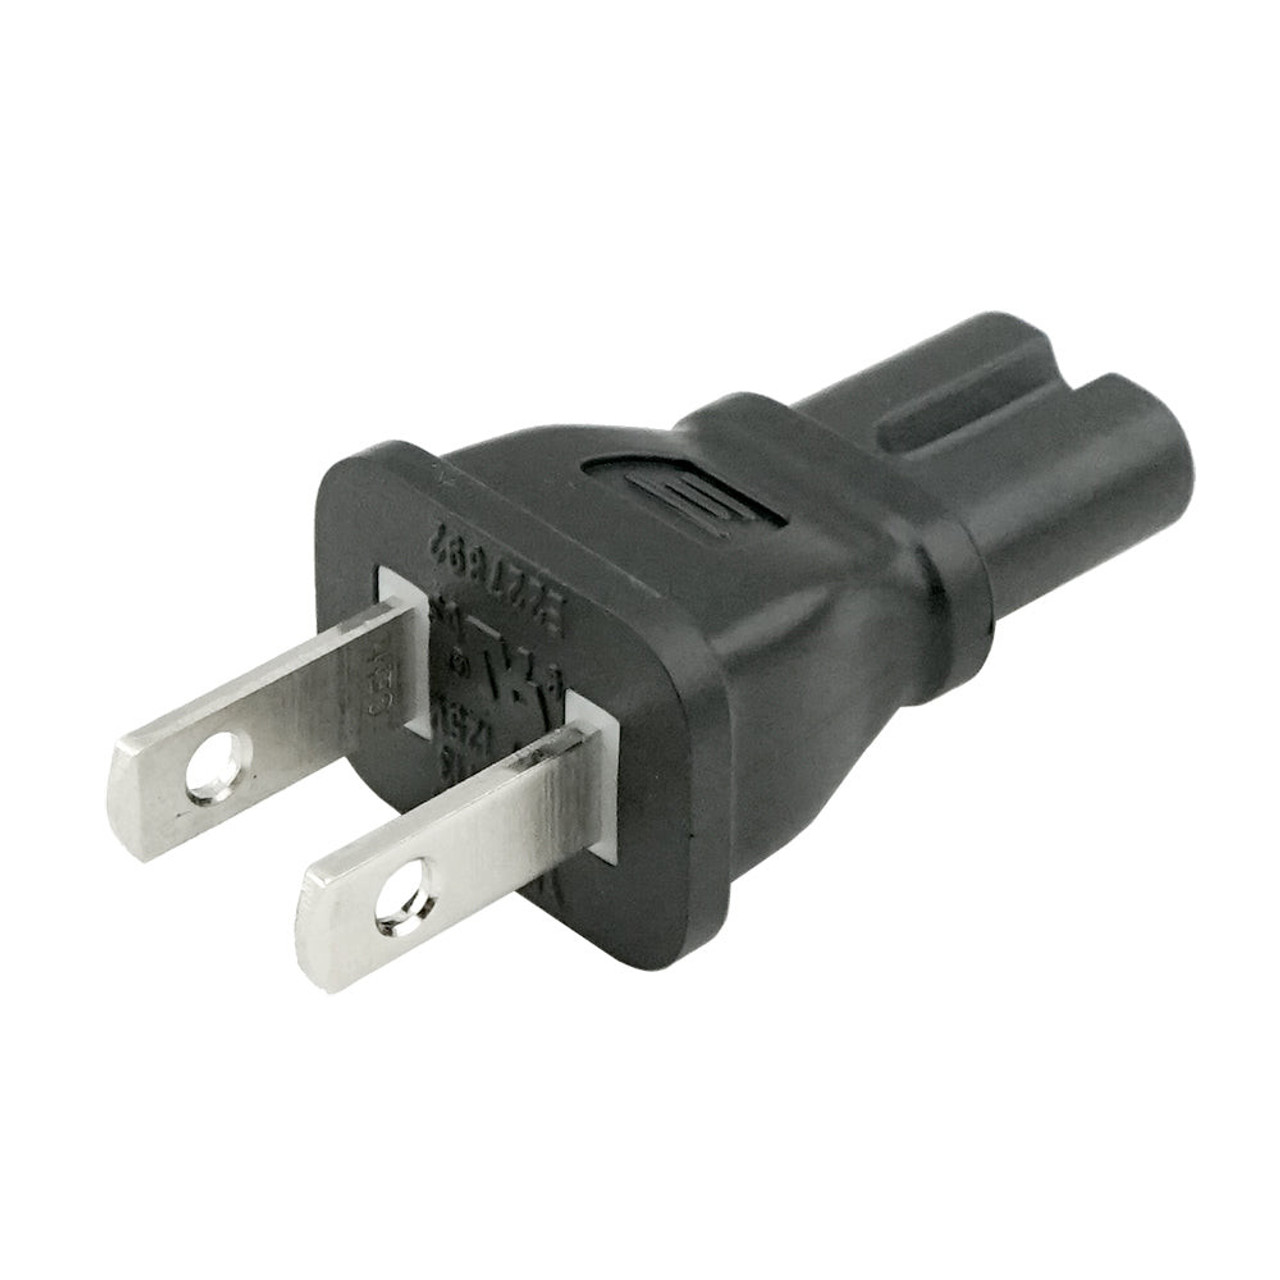 IEC C7 to USA NEMA 1-15P Plug Adapter - www